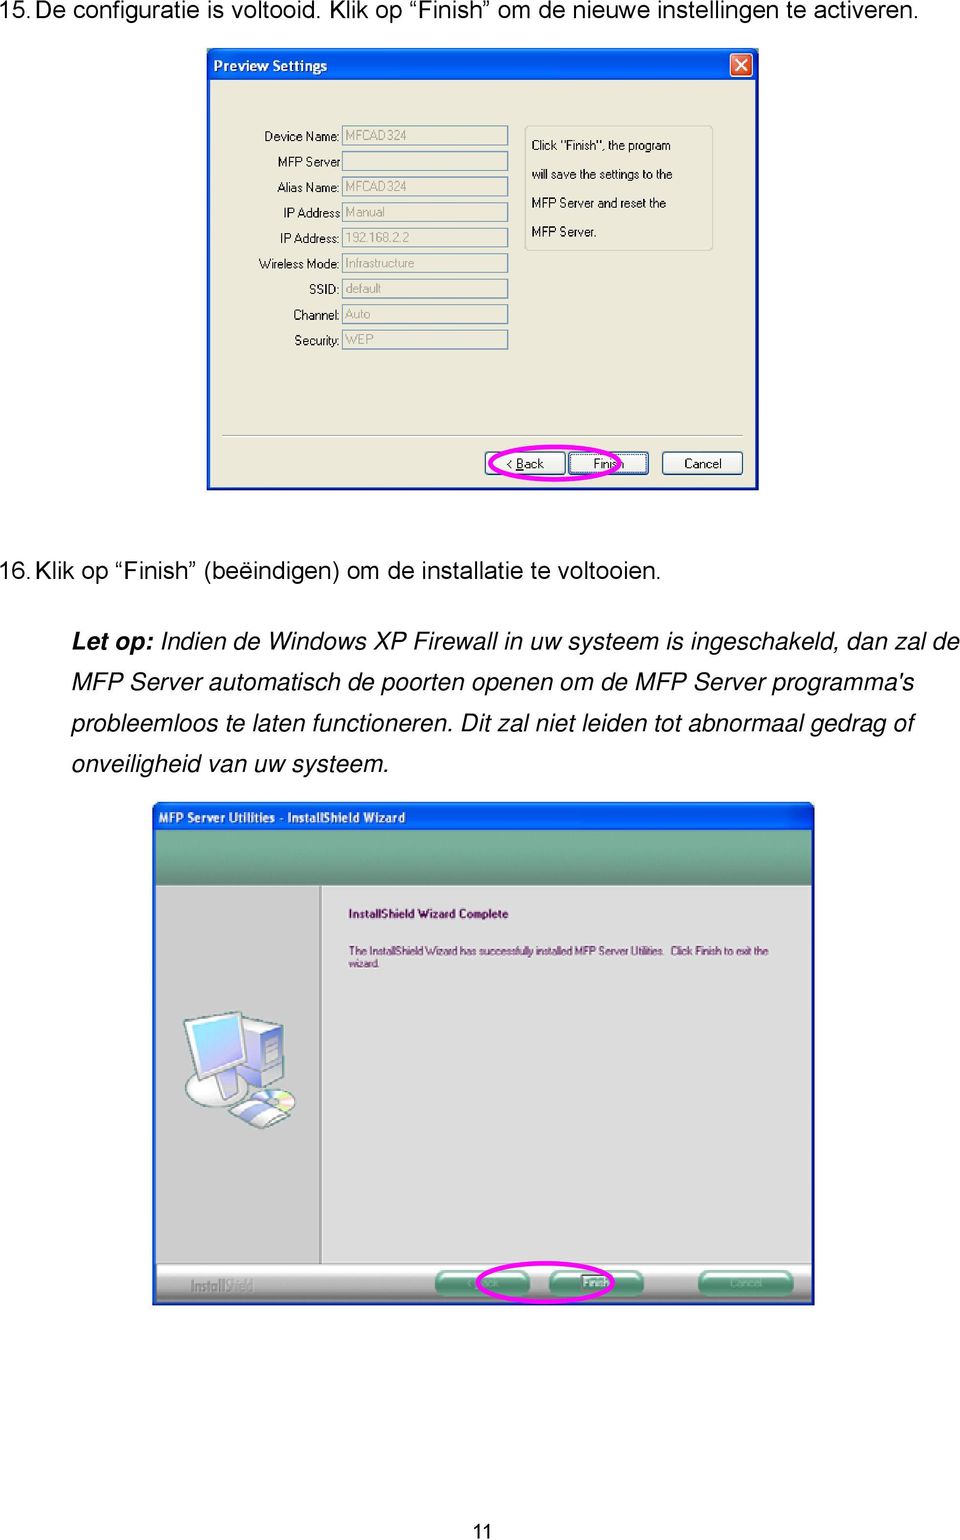 Let op: Indien de Windows XP Firewall in uw systeem is ingeschakeld, dan zal de MFP Server automatisch